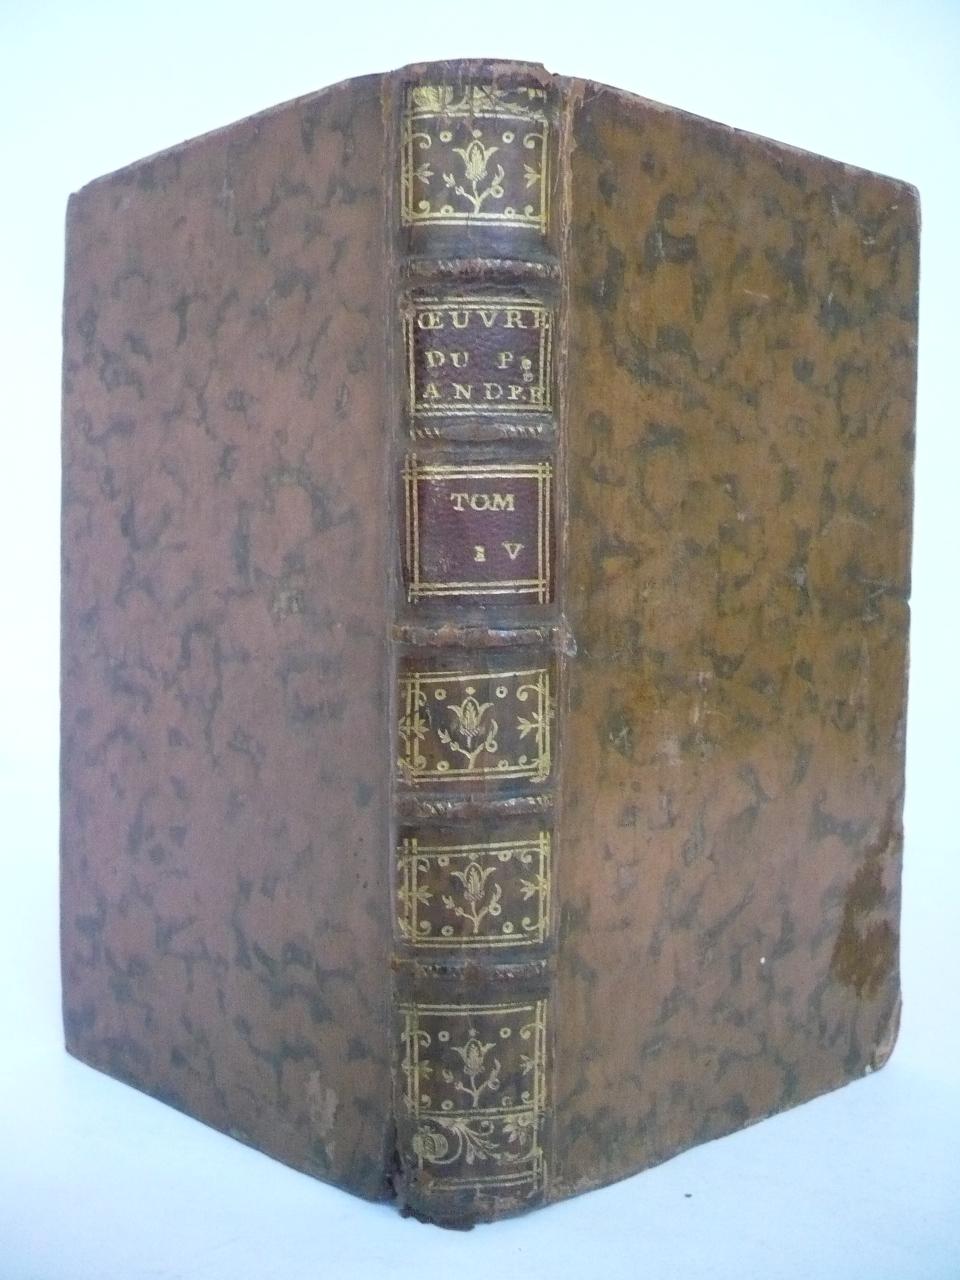 OEUVRES DE FEU P. ANDRÉ. (1767) Auca Llibres Antics